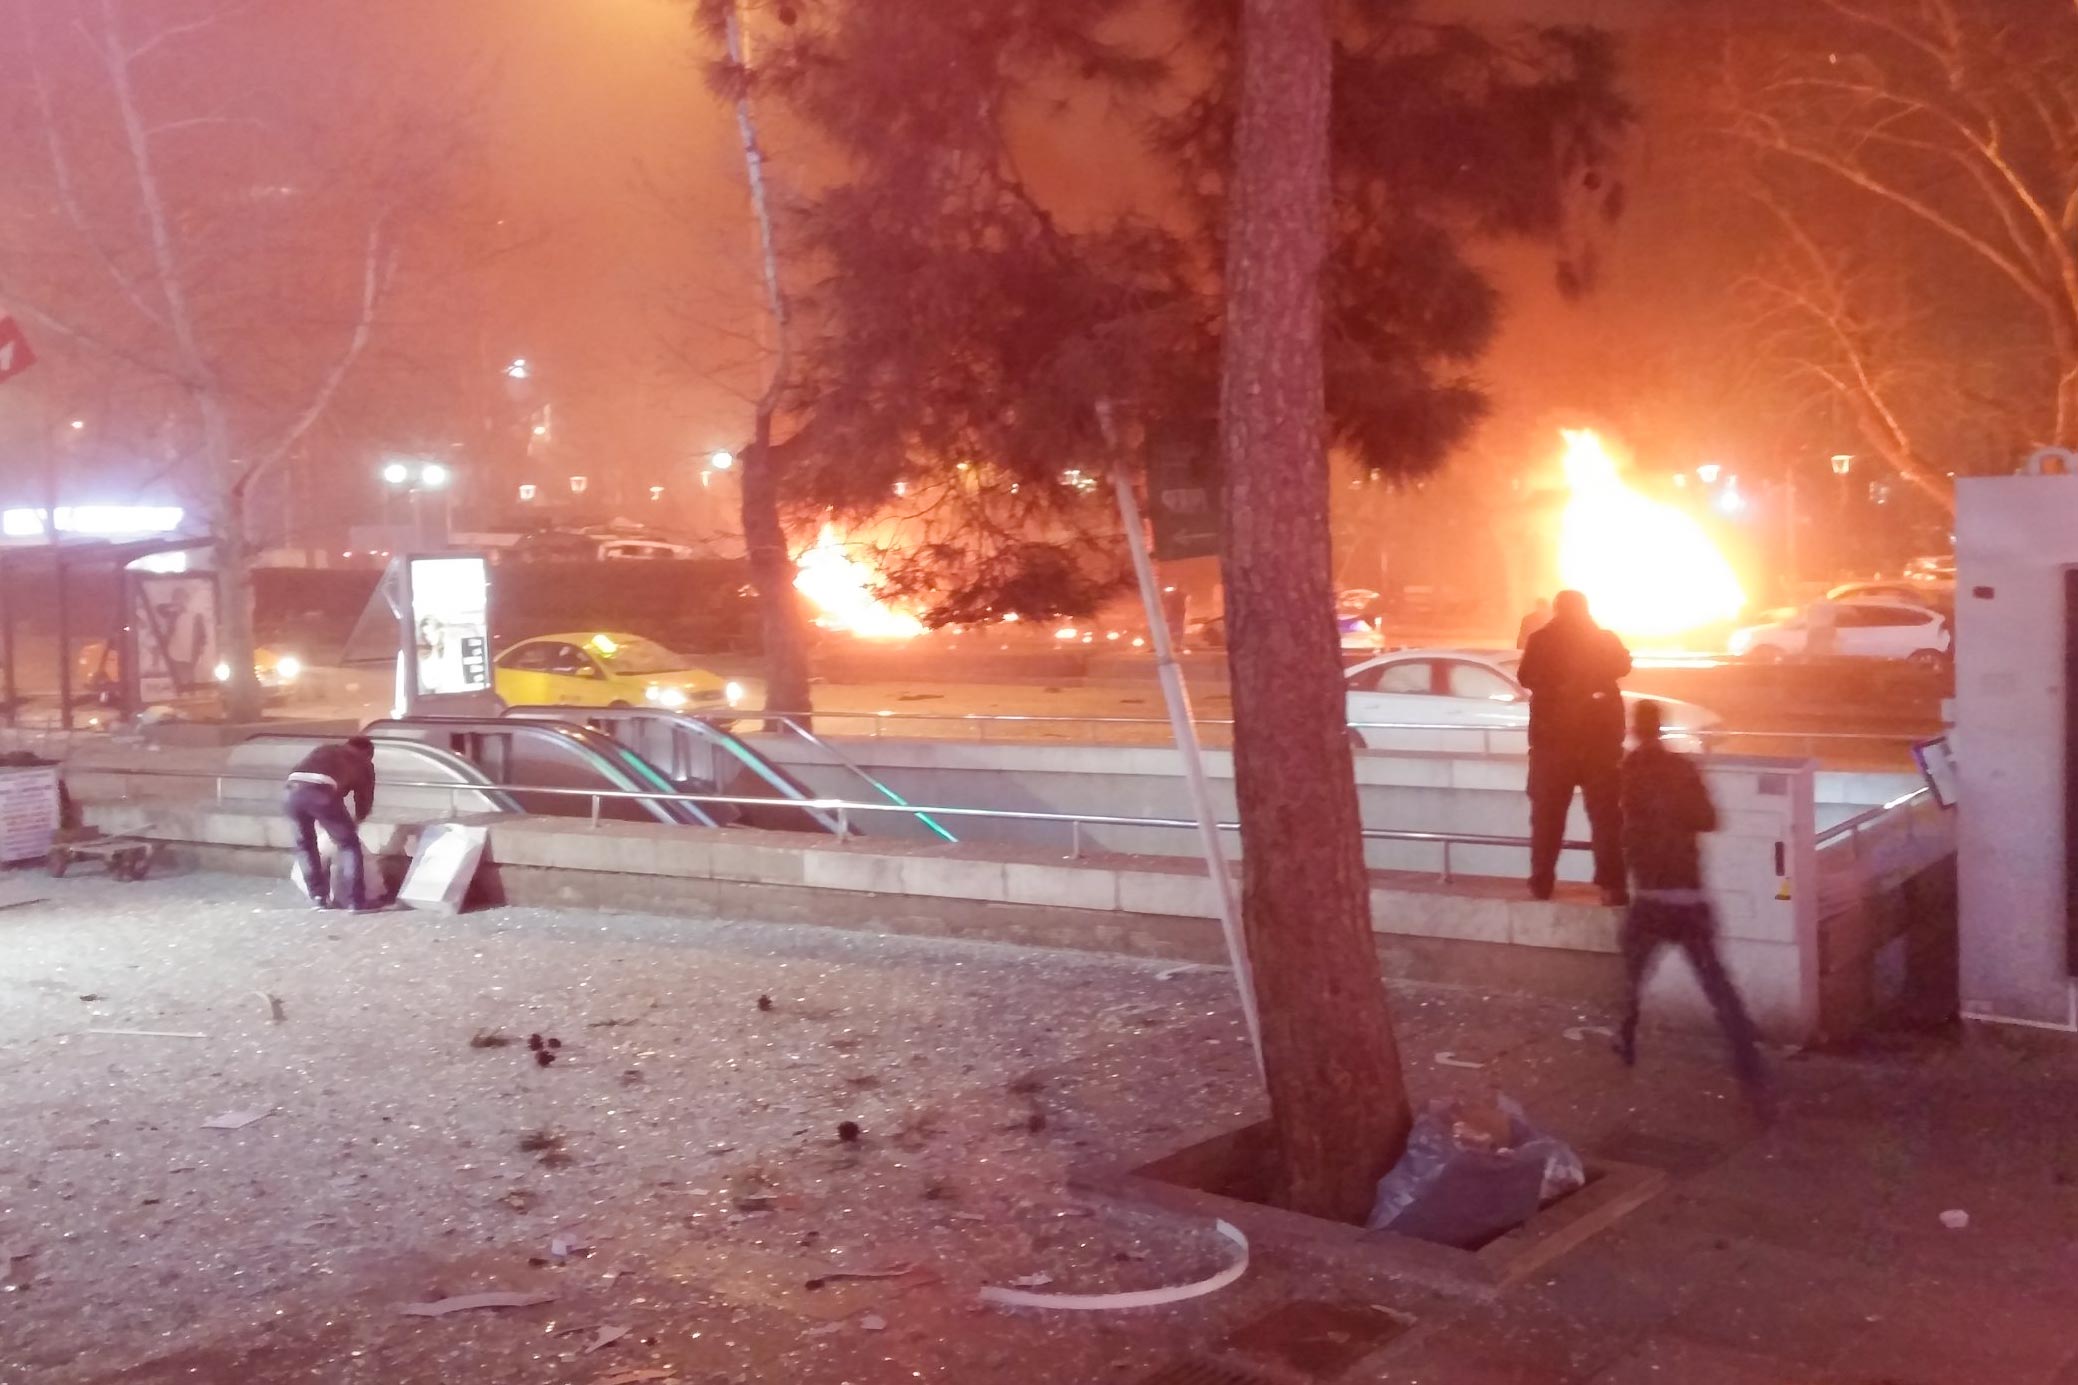 Ankara suicide car bomb, March 2016